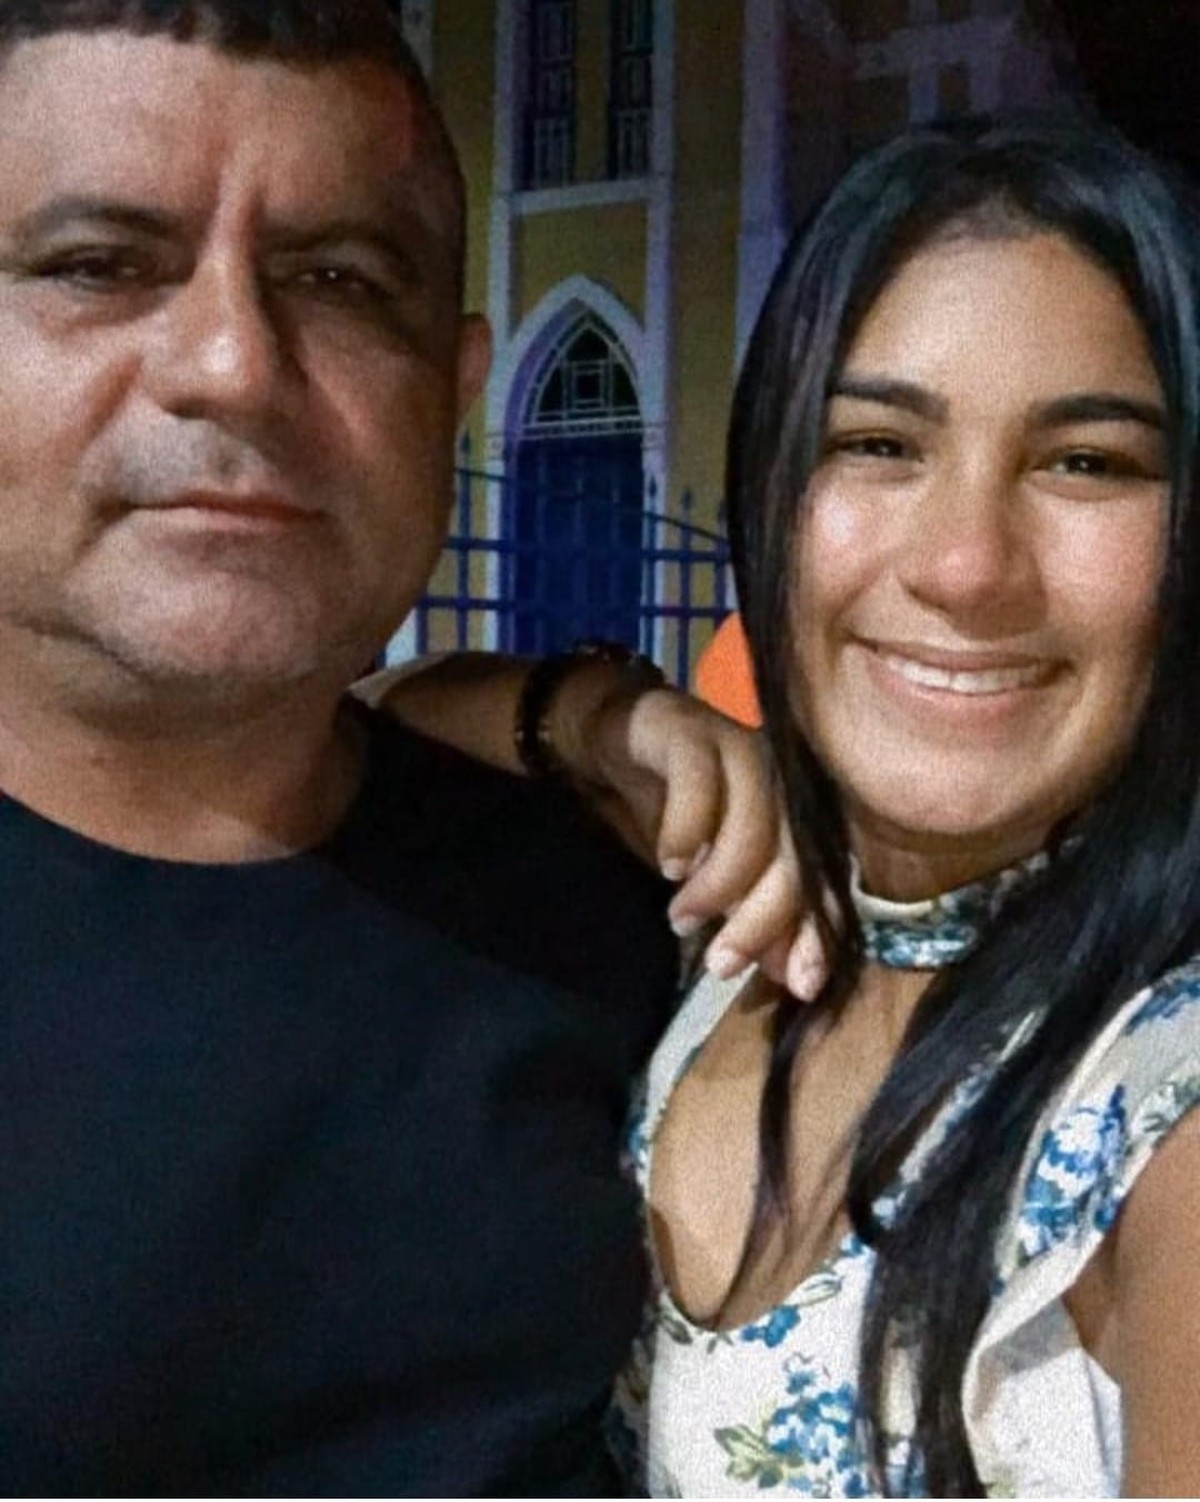 Subtenente Da Pm Mata Jovem A Tiros E Tira A Própria Vida Após Discussão Em Canindé No Ceará